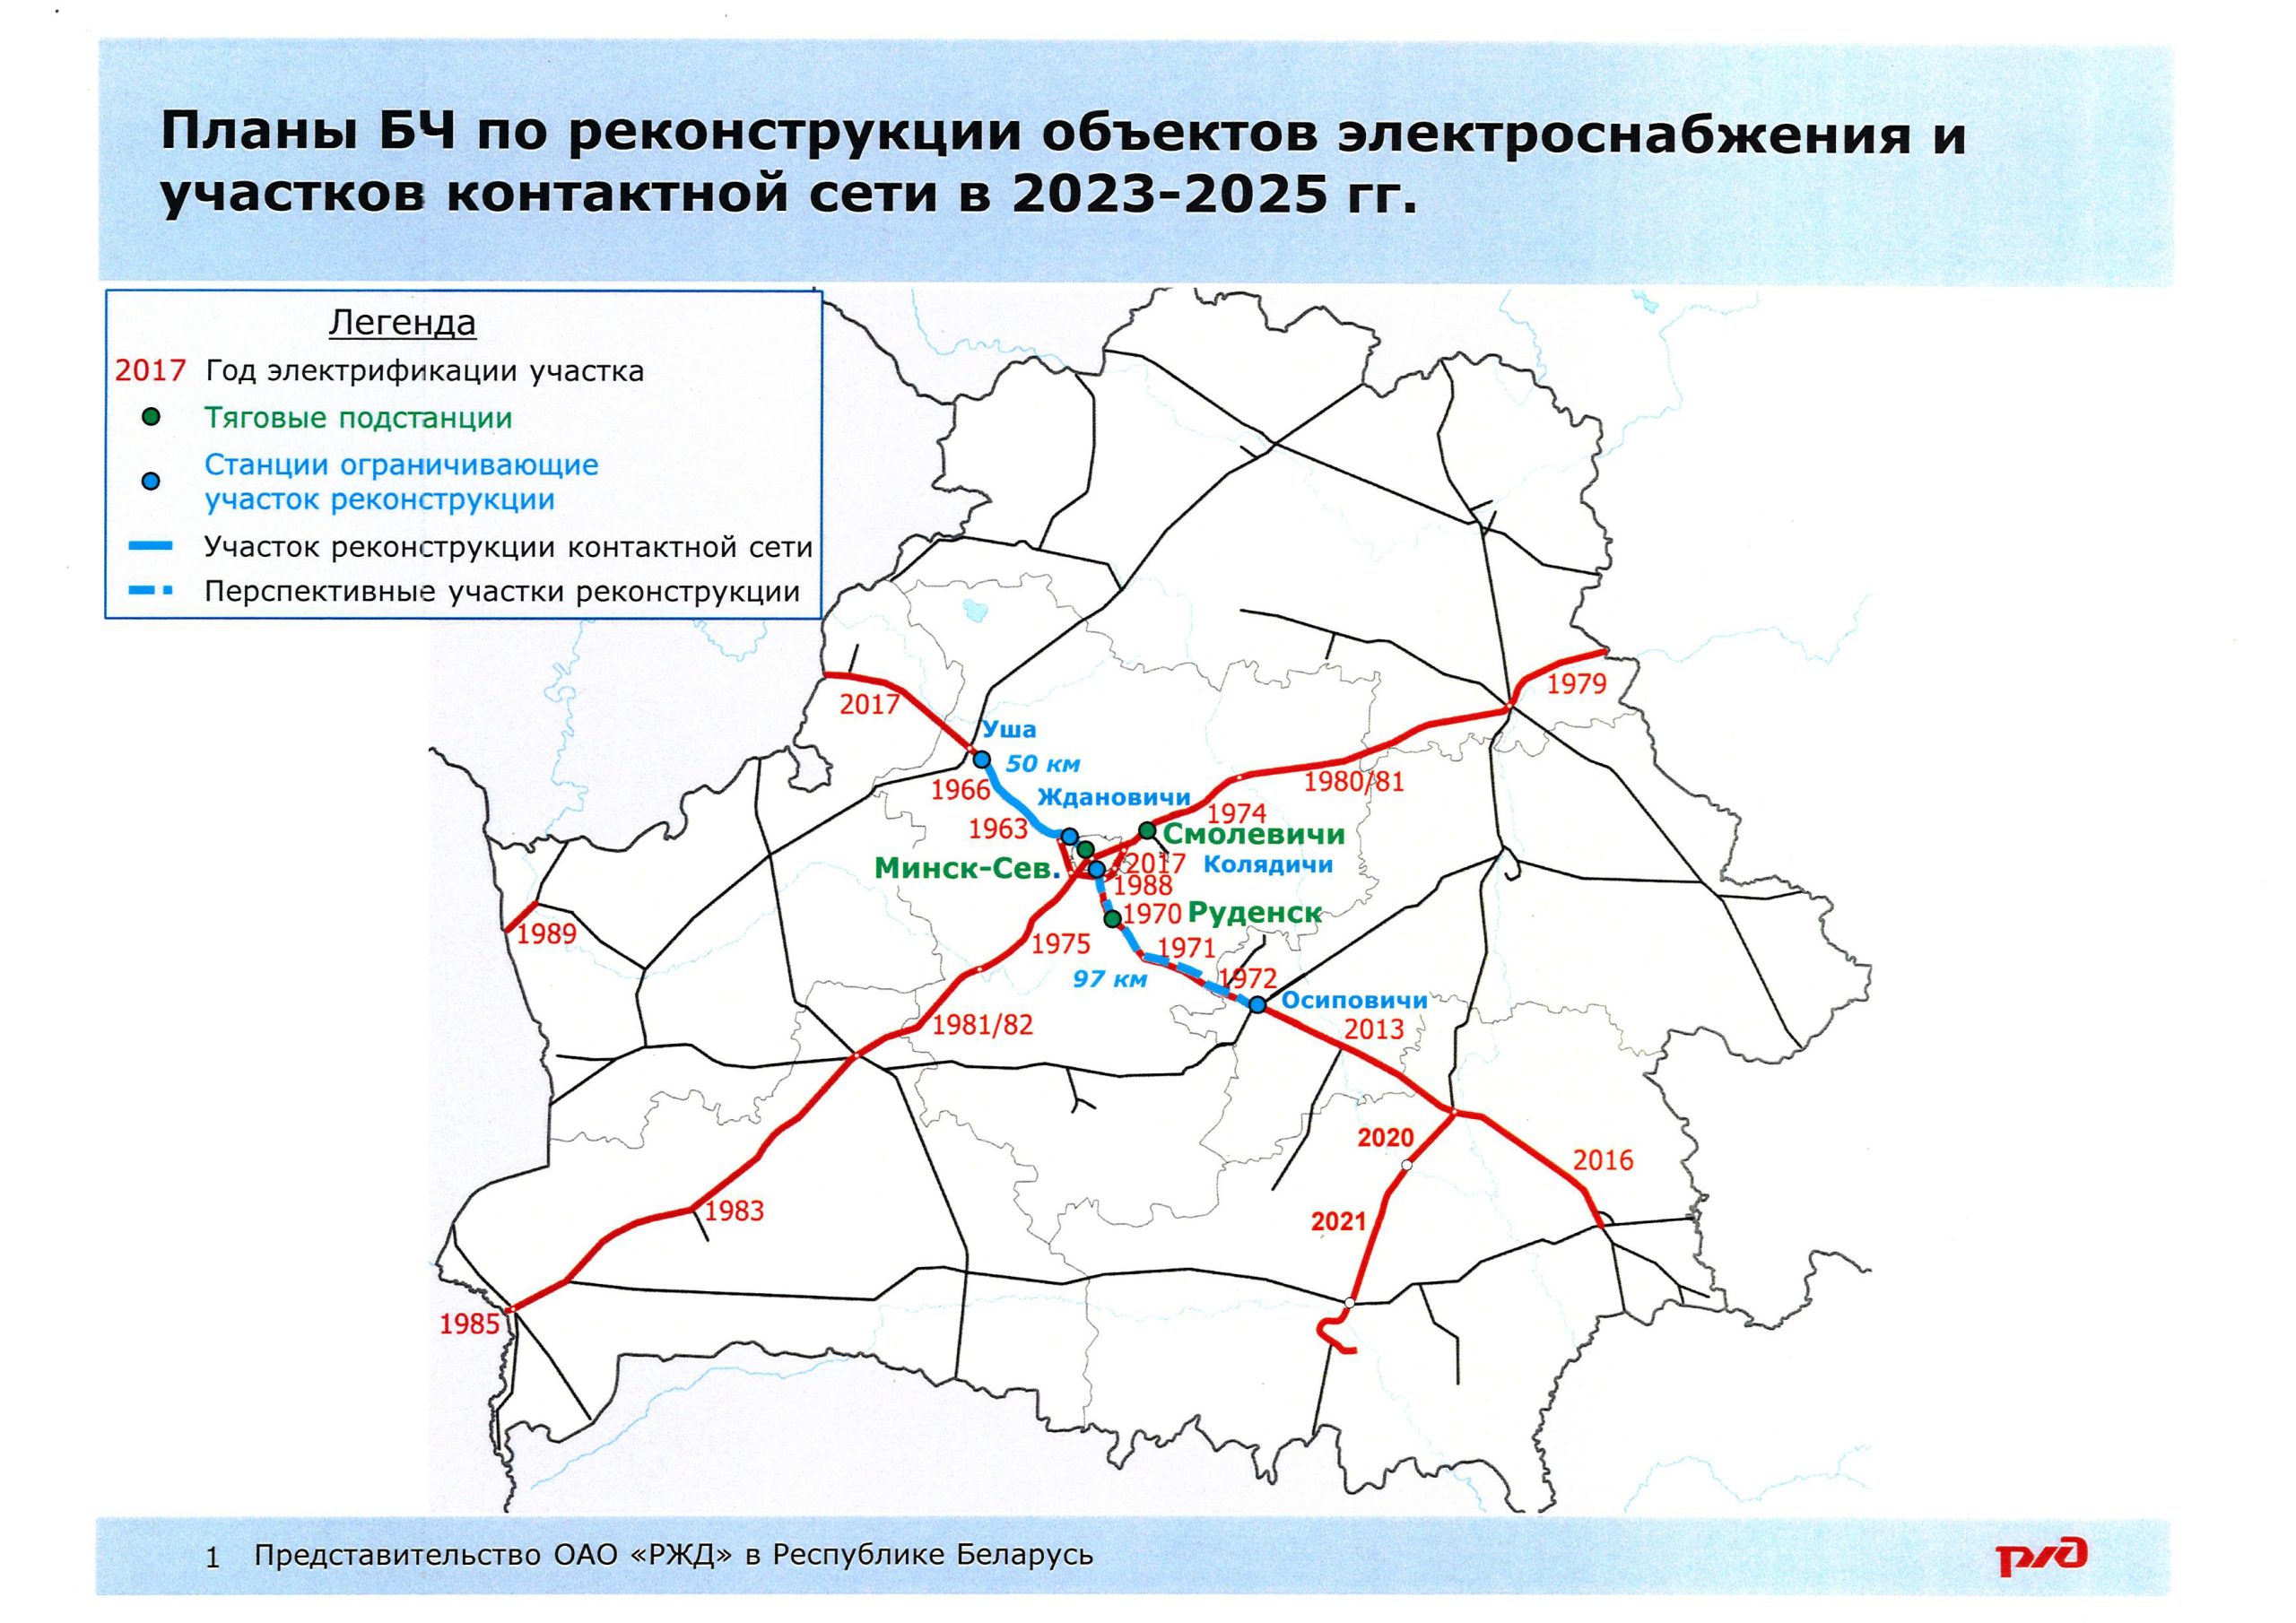 Планы БЖД по реконструкции объектов инфраструктуры электроснабжения в 2023-2025 гг.